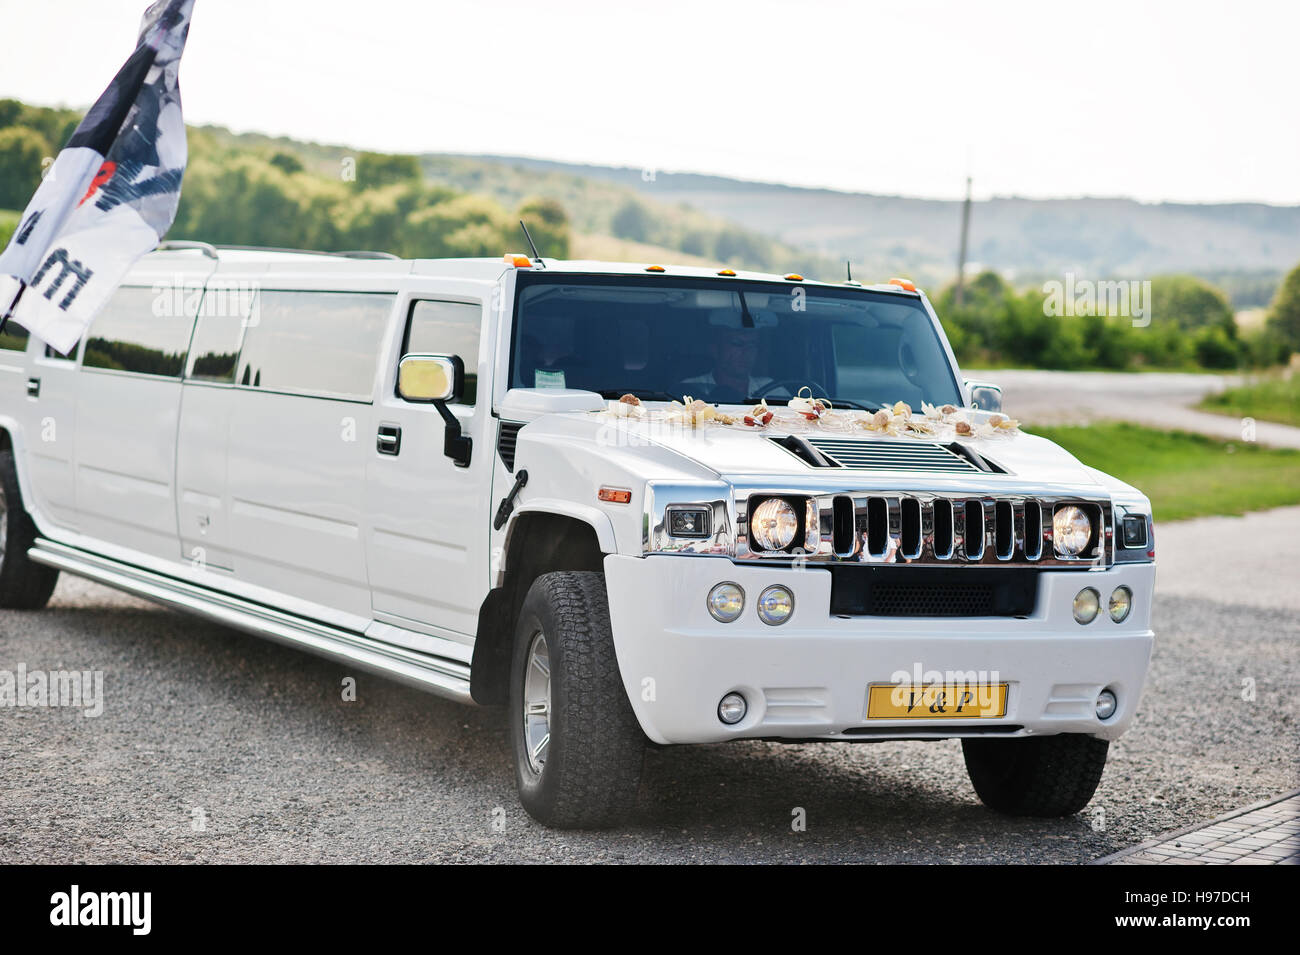 Kiev, Ucraina - 31 agosto: eleganza matrimonio bianco limousine Hummer H2  sul giorno di nozze Foto stock - Alamy